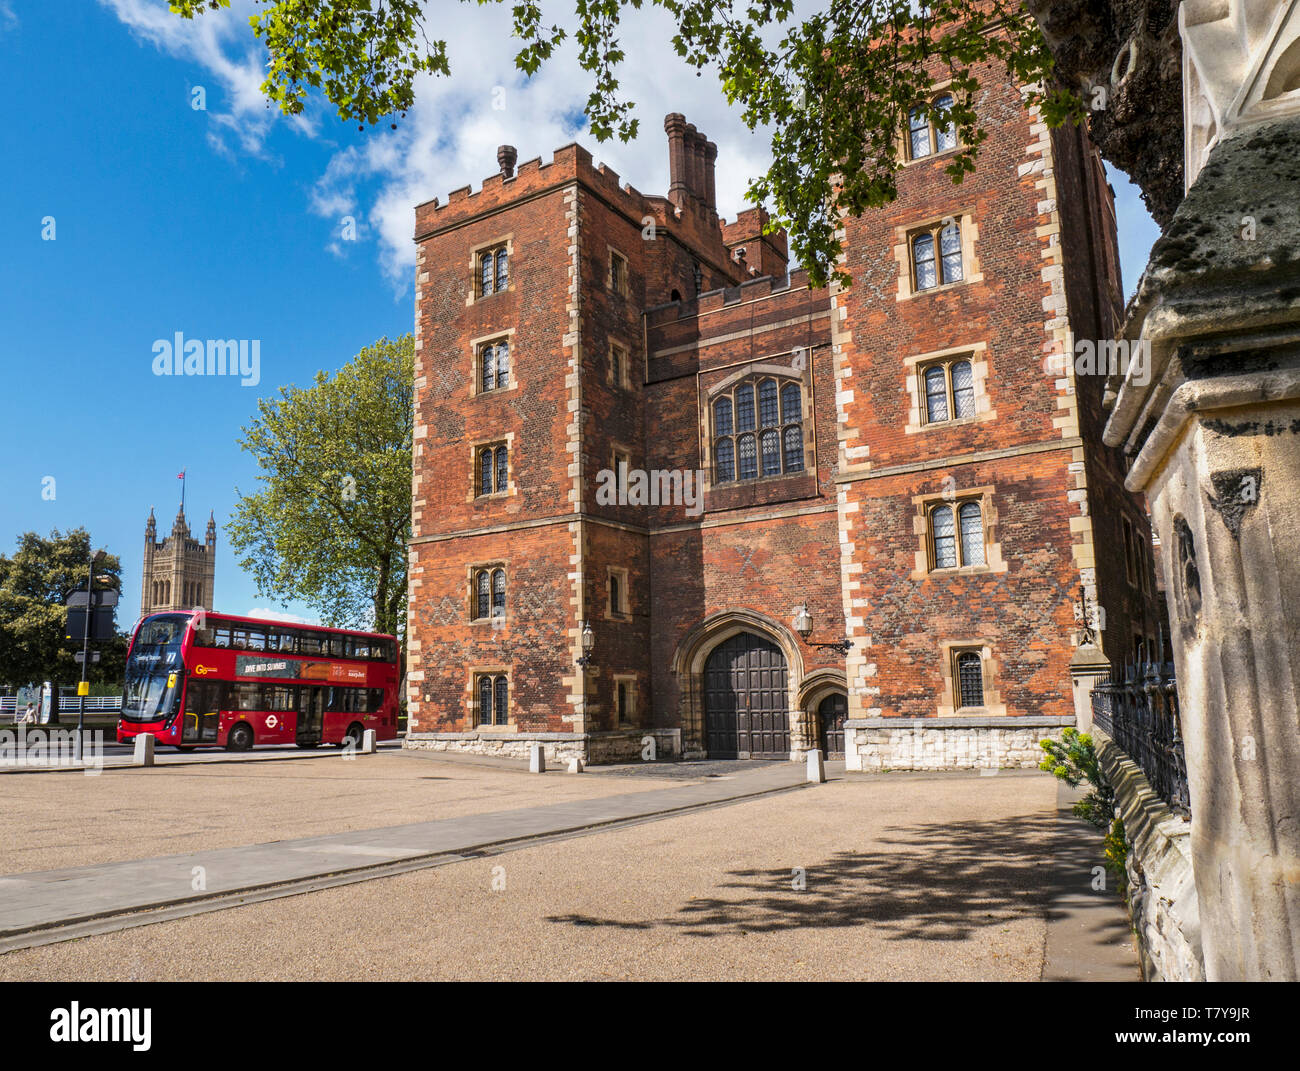 Lambeth Palace de Londres. Morton's Tower avec le Parlement et du London Bus. Tudor en brique rouge gatehouse formant l'entrée de Lambeth Palace London UK Banque D'Images